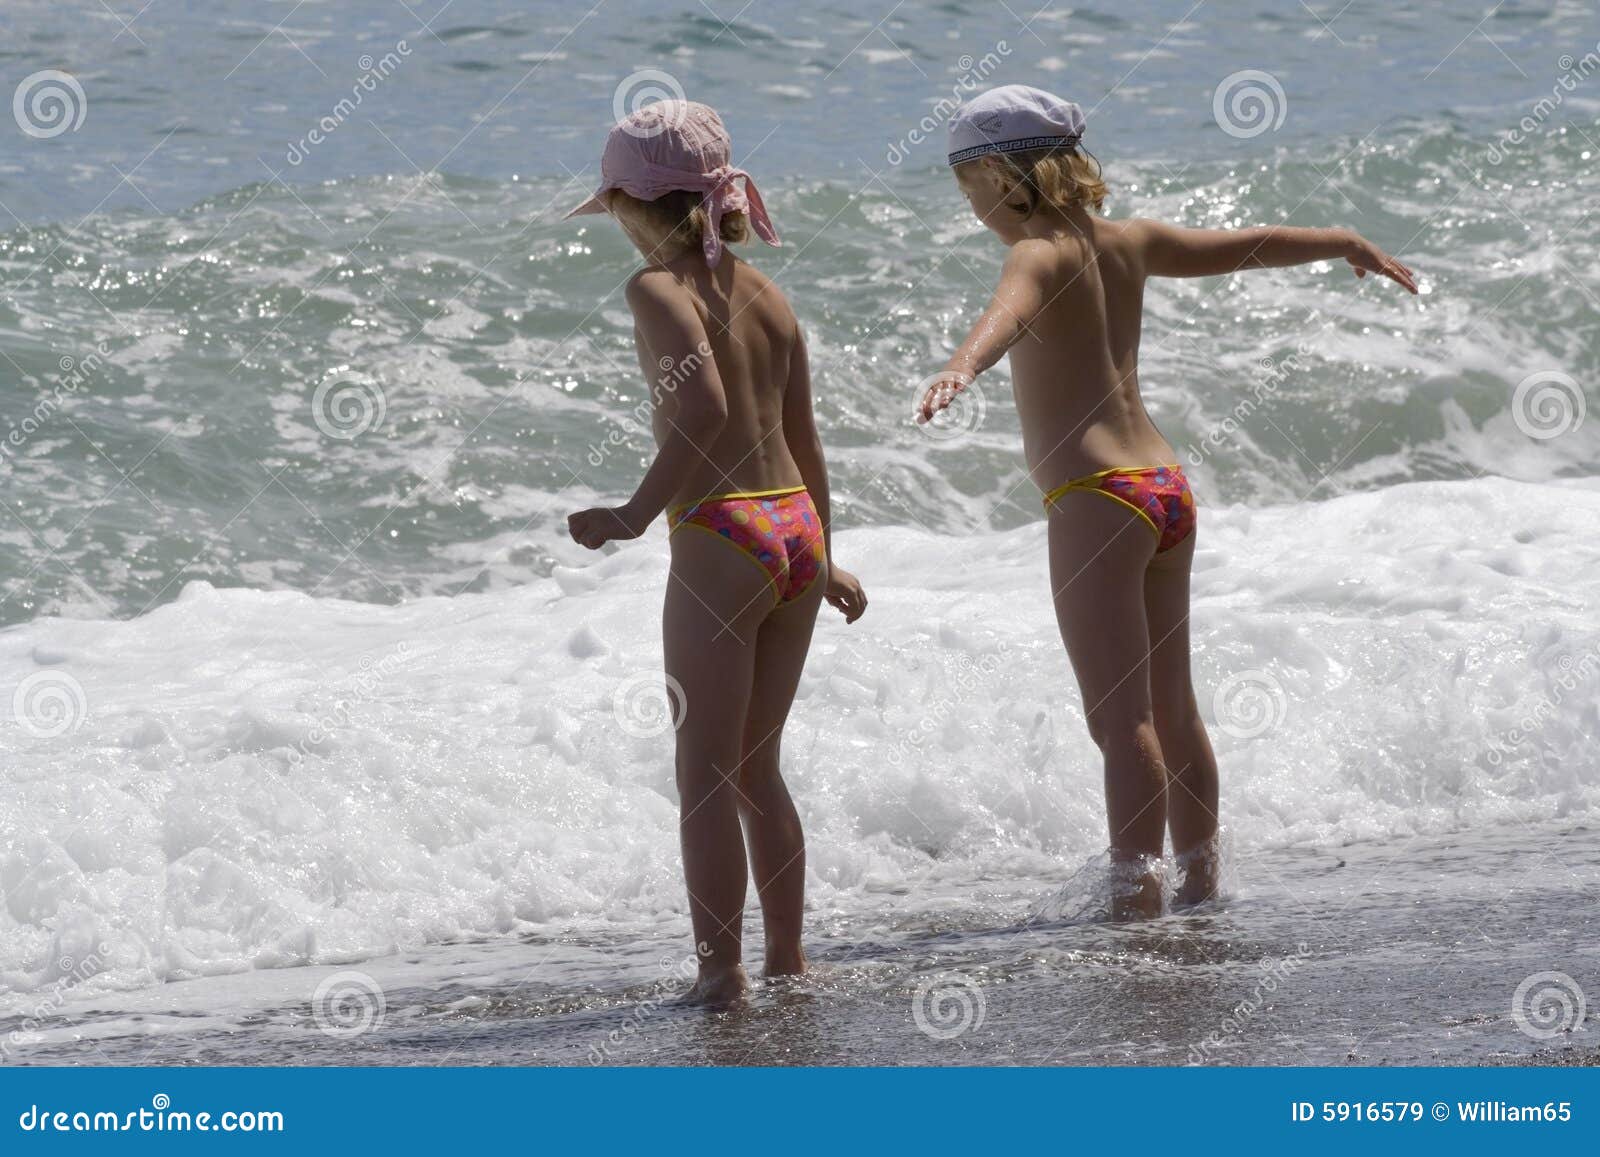 дети на голом пляже фото 37